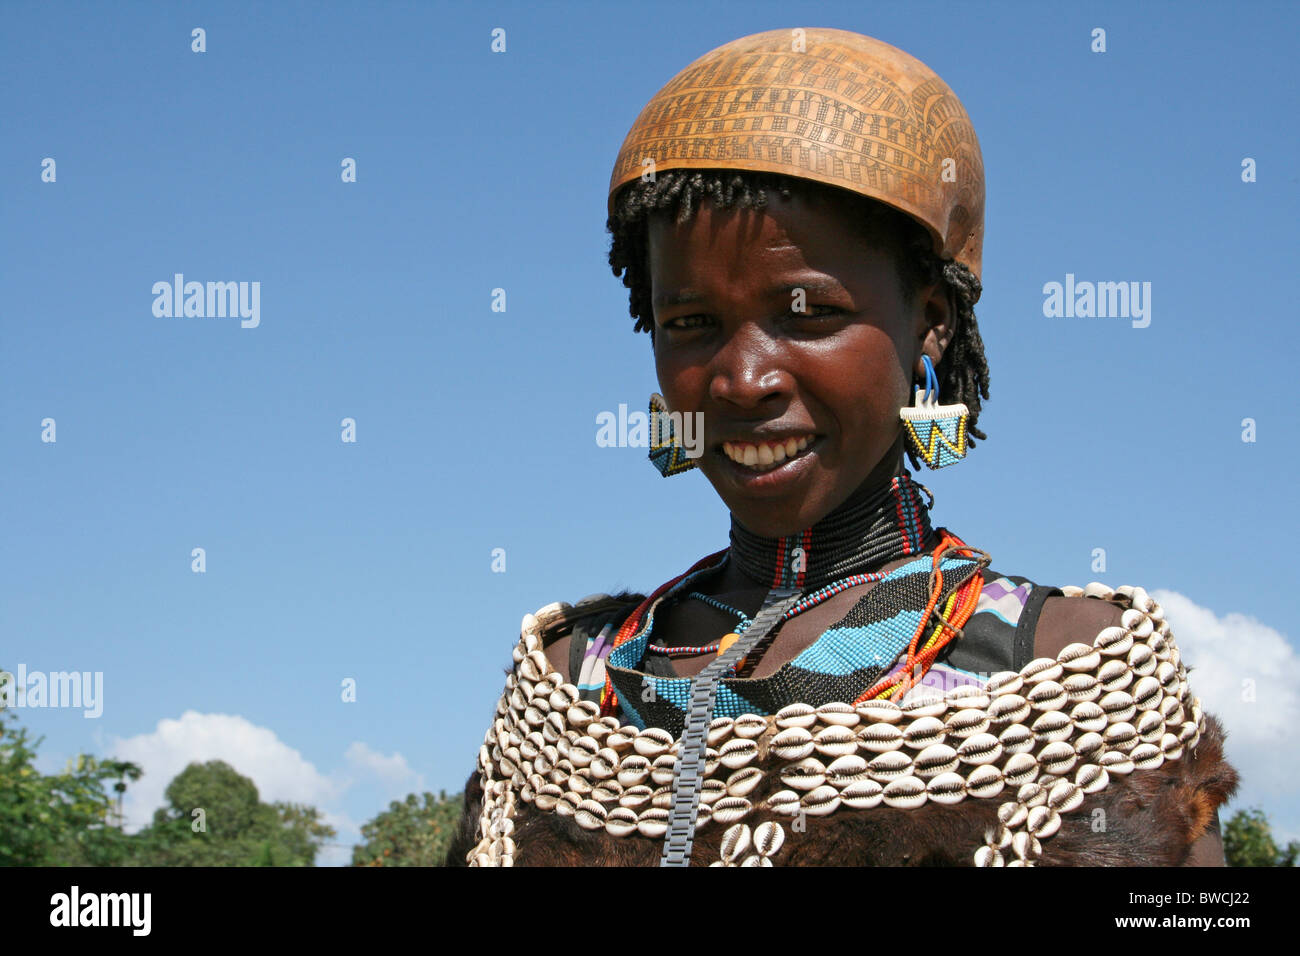 Smiling Bana Tribal Woman Taken at Key Afer, Omo Valley, Ethiopia Stock Photo